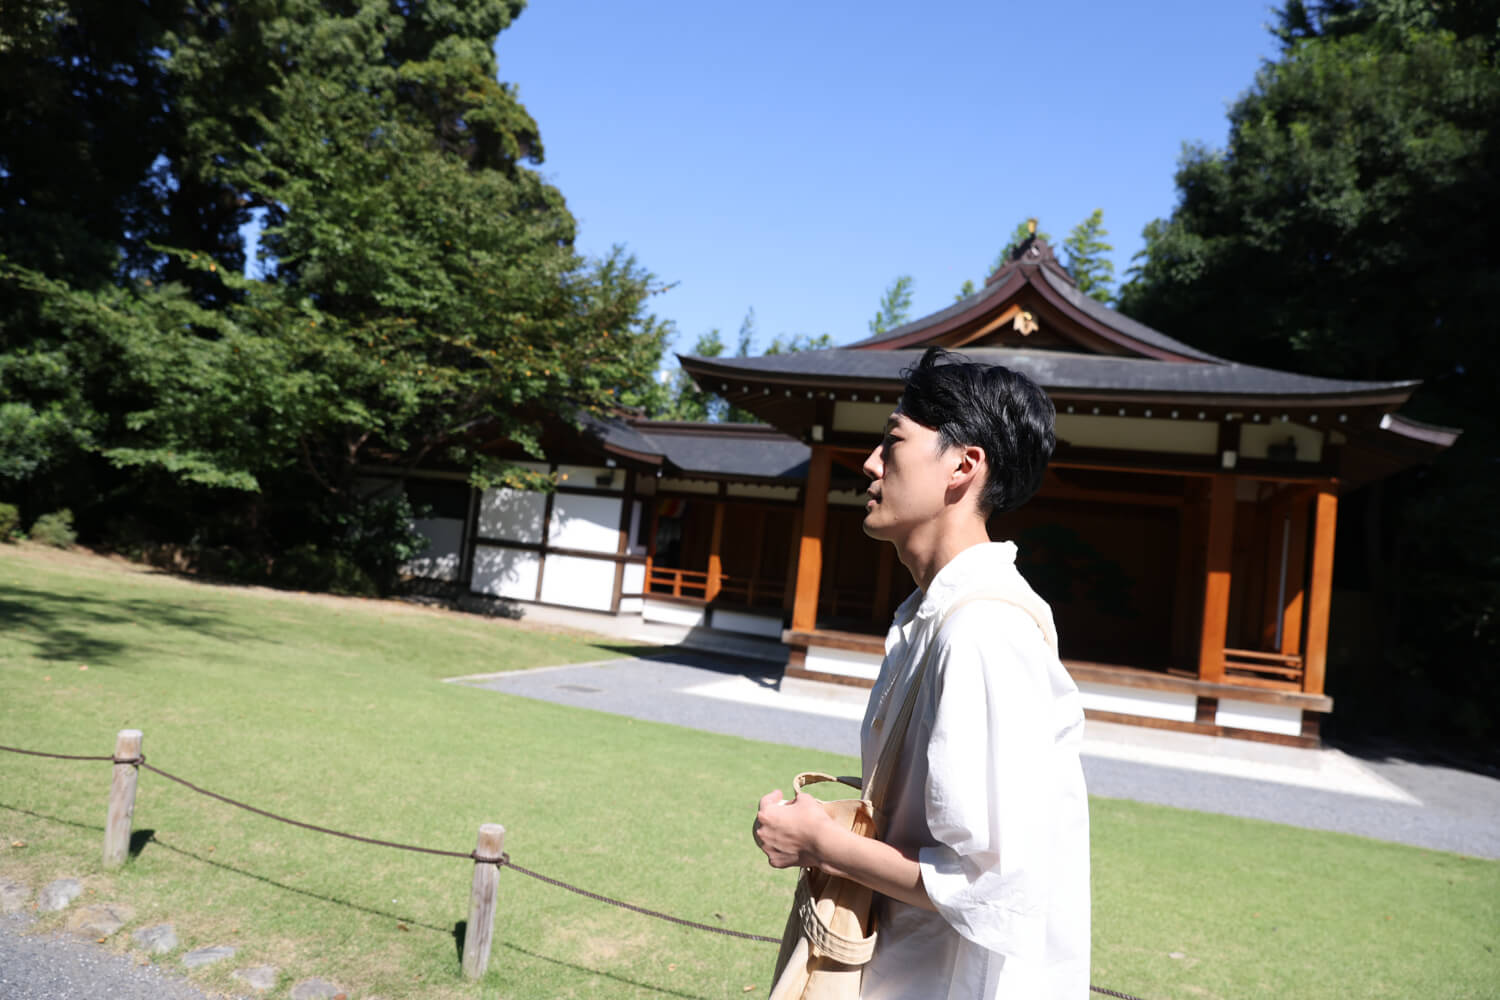 真造さんは、現在は高円寺在住。「もう少し自然があるところに暮らしたいです」。